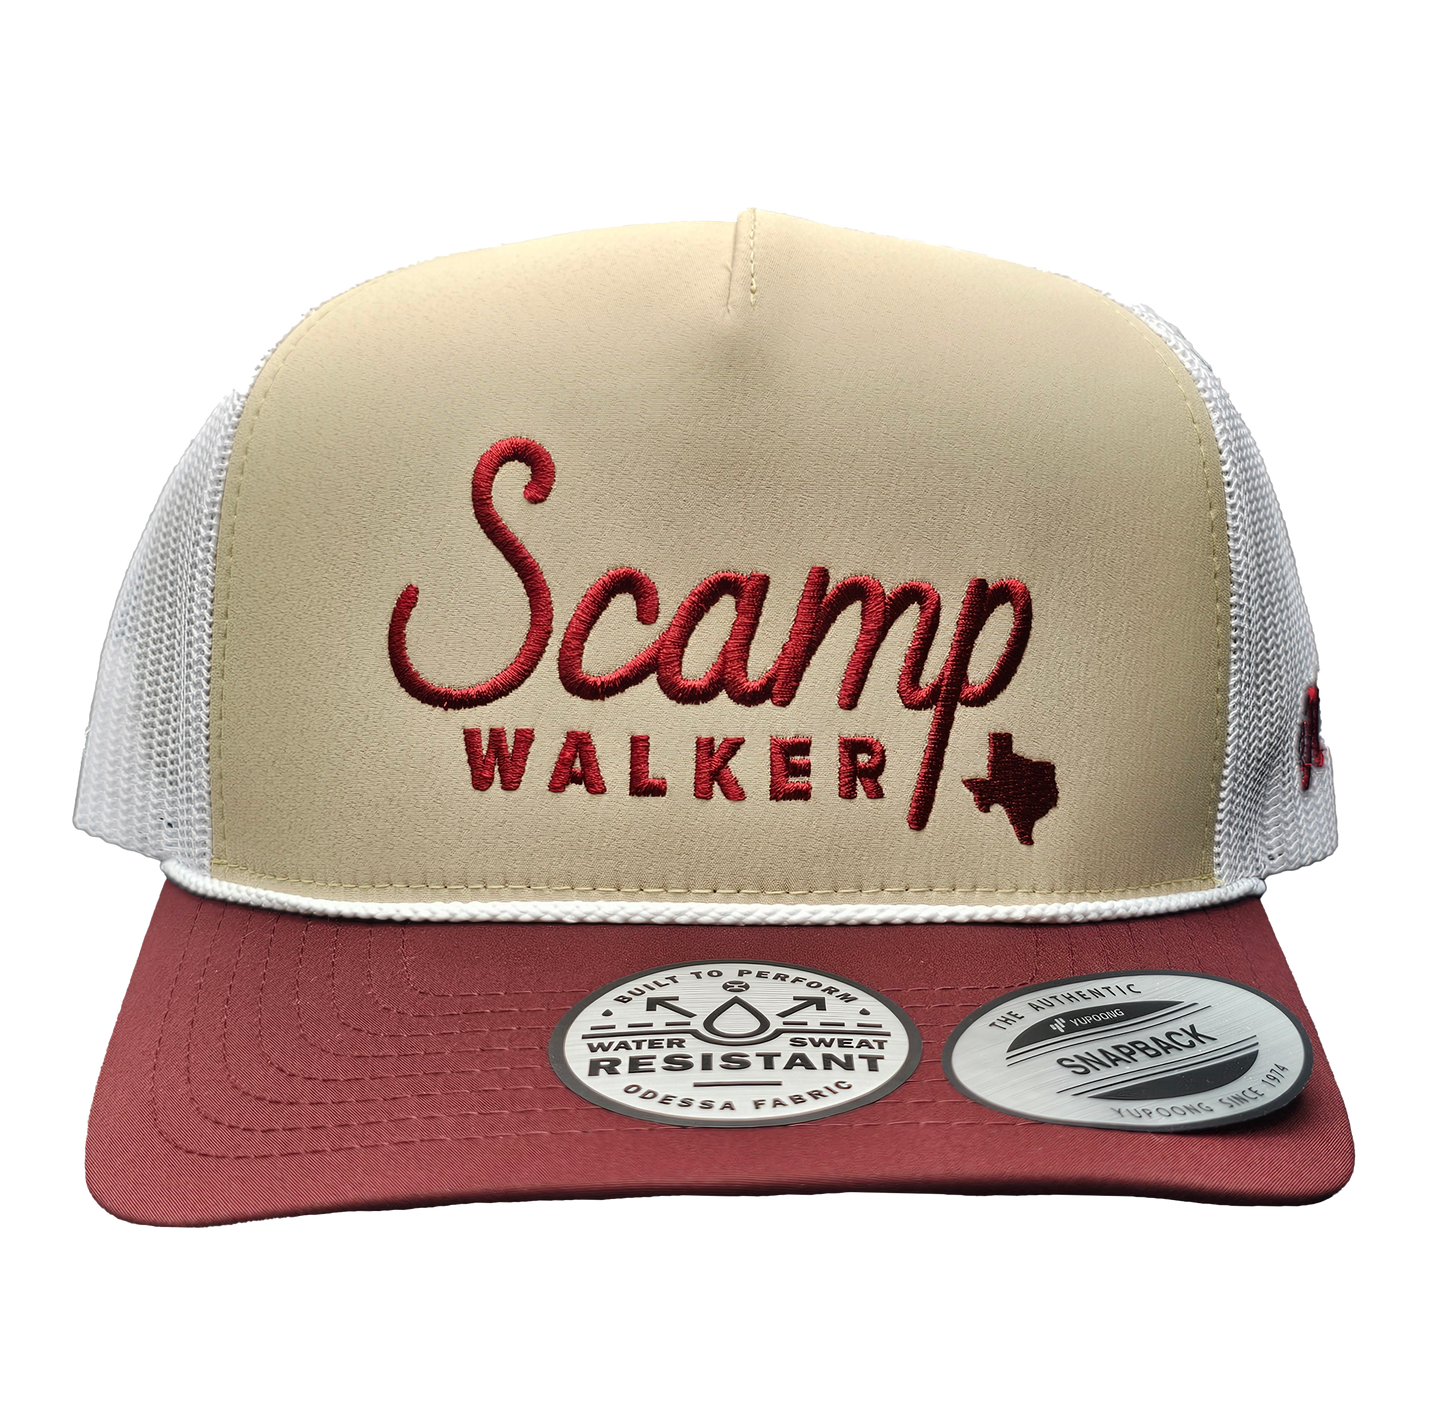 Jerry Jeff Scamp Walker Hat